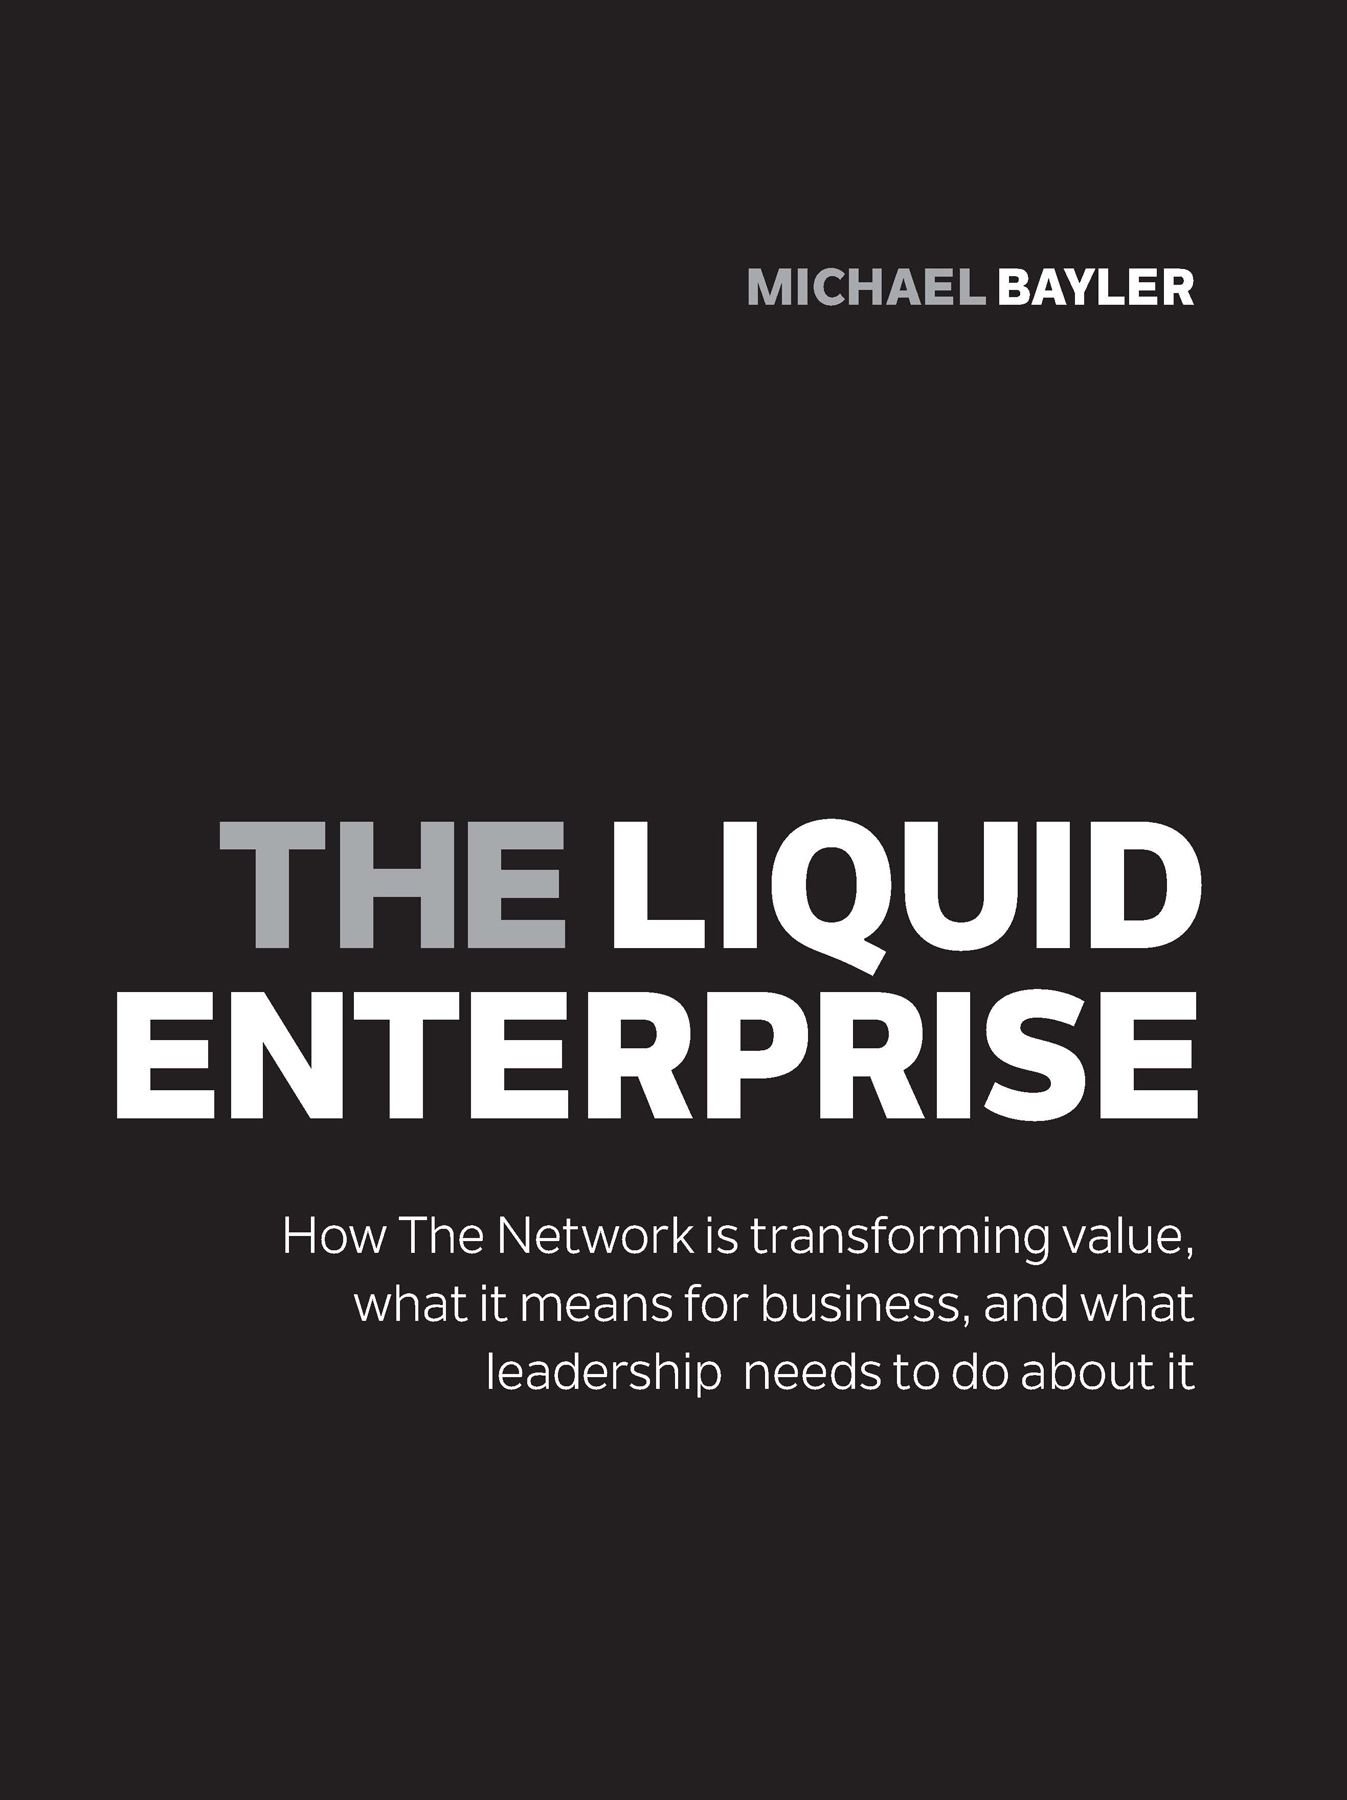 The liquid enterprise